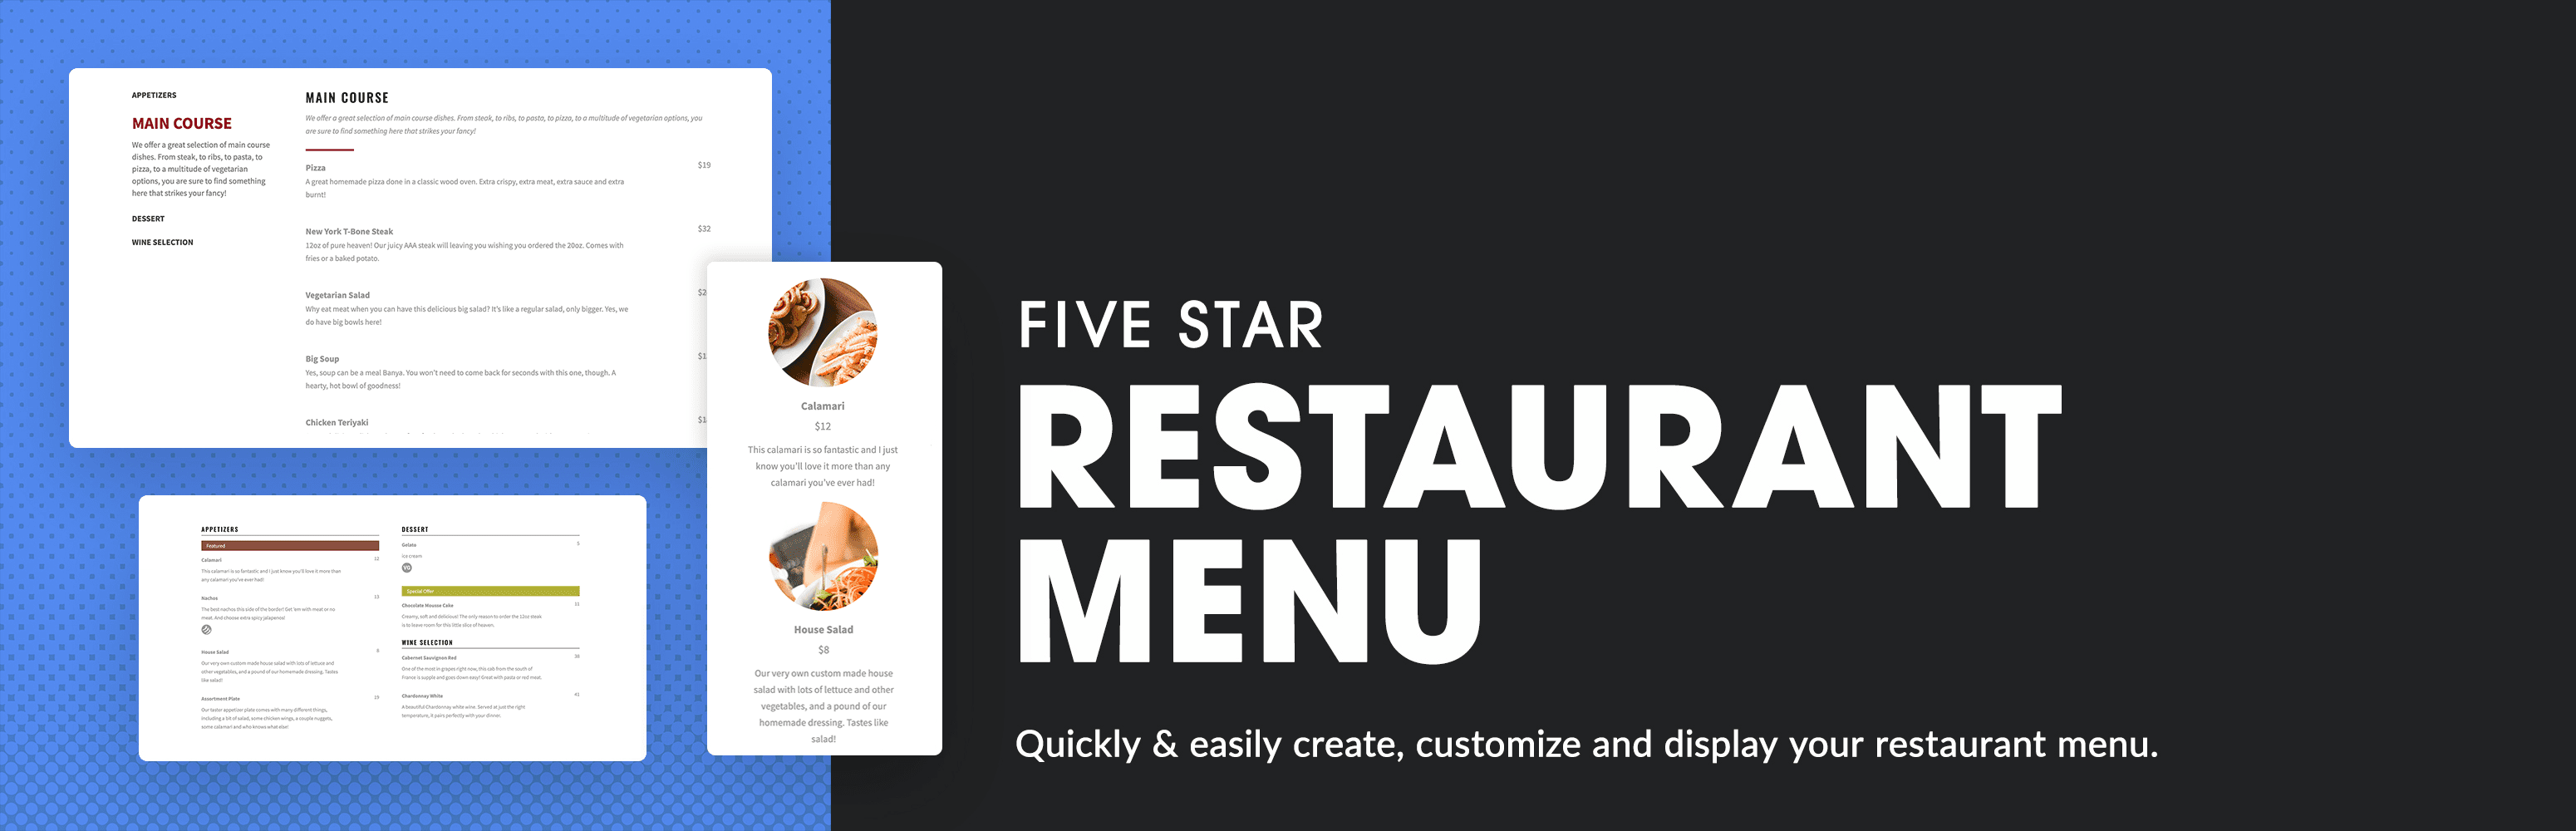 five star restaurant